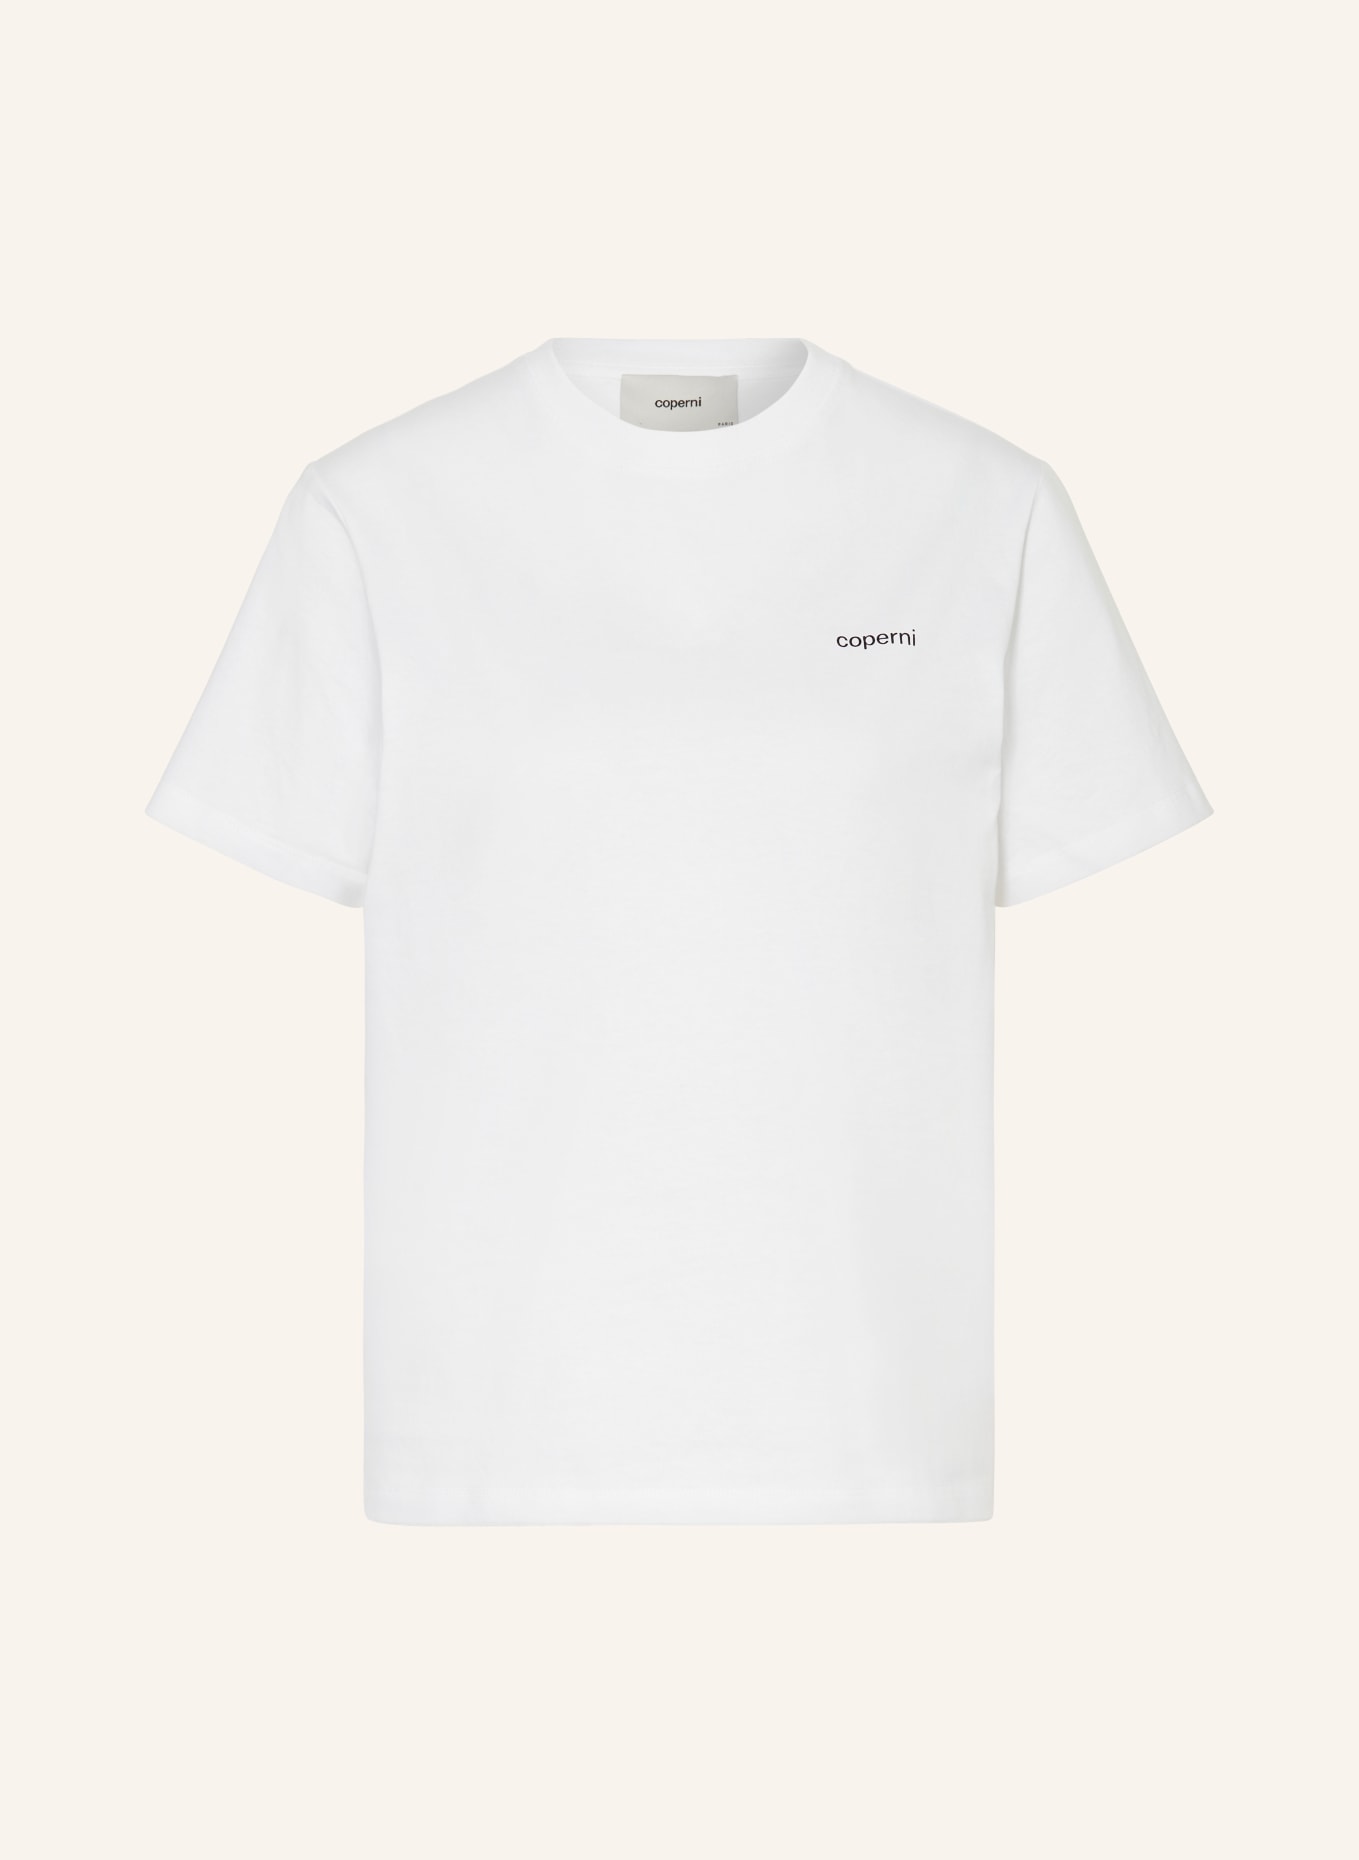 coperni T-Shirt, Farbe: WEISS (Bild 1)